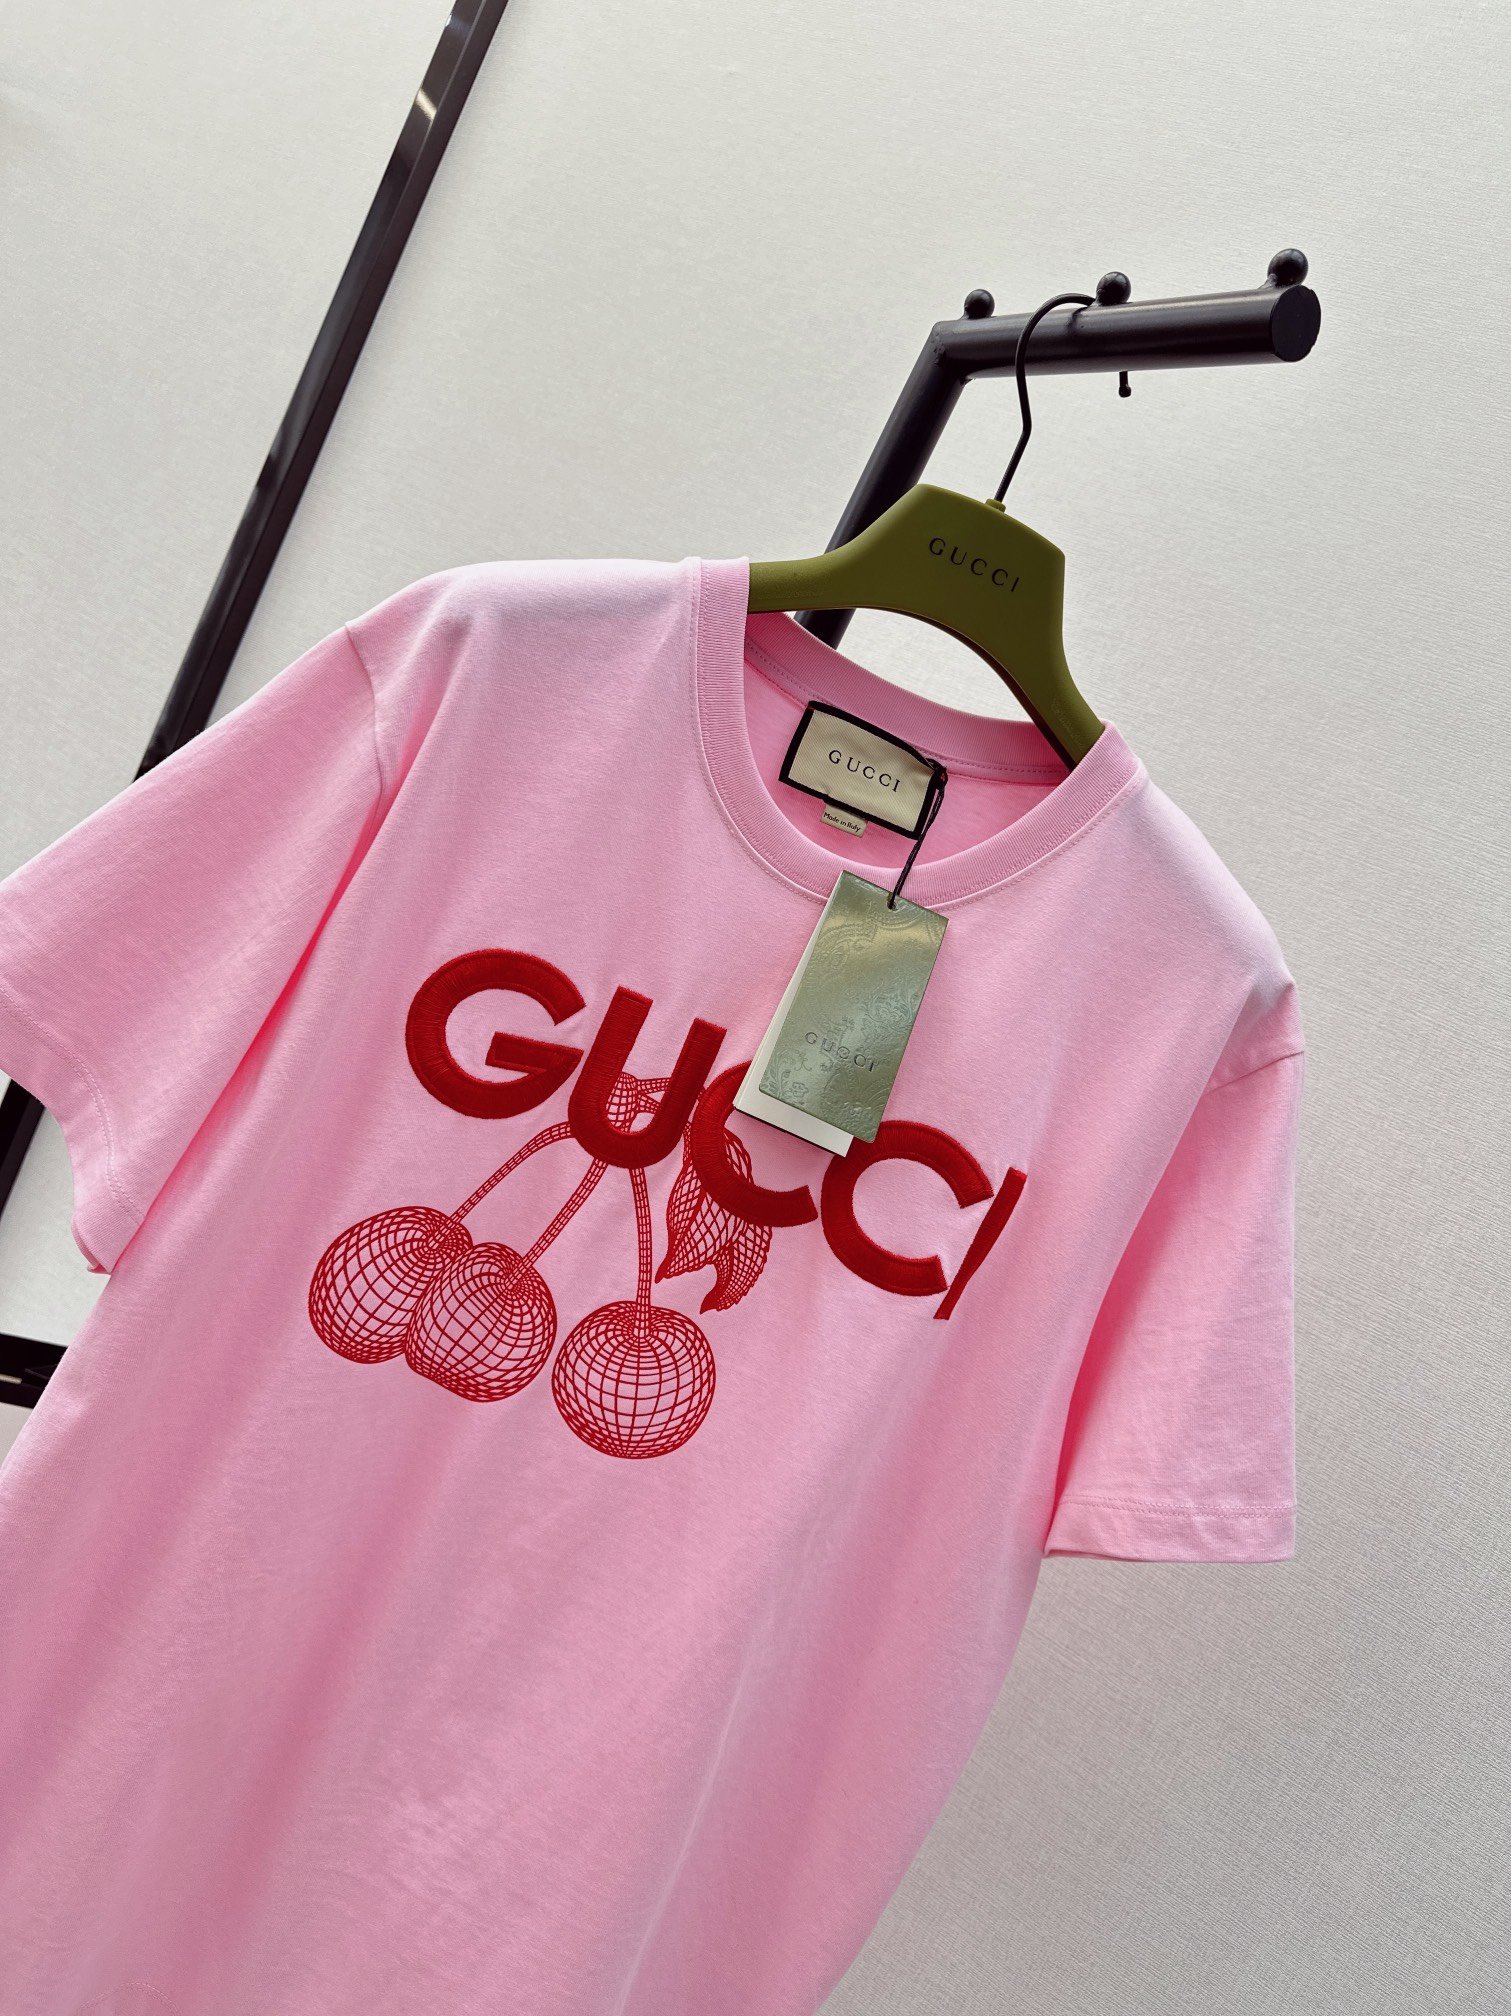 爆单推荐Gu24Ss春夏最新款圆形GG徽标刺绣棉质T恤复古美式运动风格简单好看又百搭的t谁能不爱百分百纯